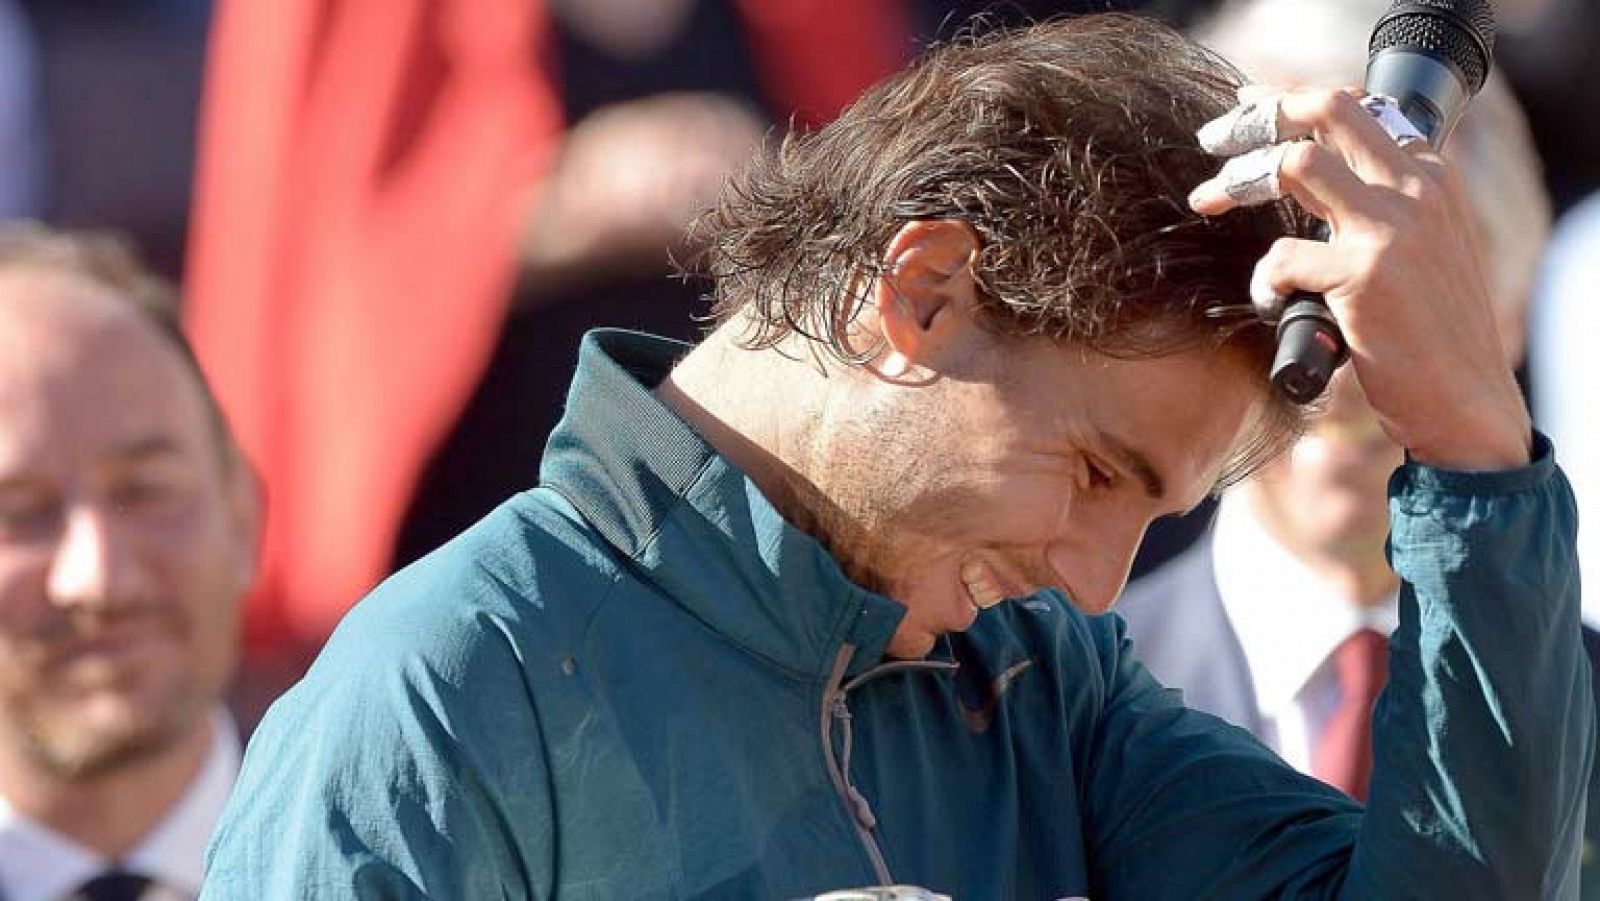 Rafa Nadal tiene que estar muy contento. Después de siete meses lesionado era muy difícil llegar al momento cumbre de la temporada -para él, Roland Garros- en las mejores condiciones. Y como se demostró ante Federer, lo ha conseguido. El único proble